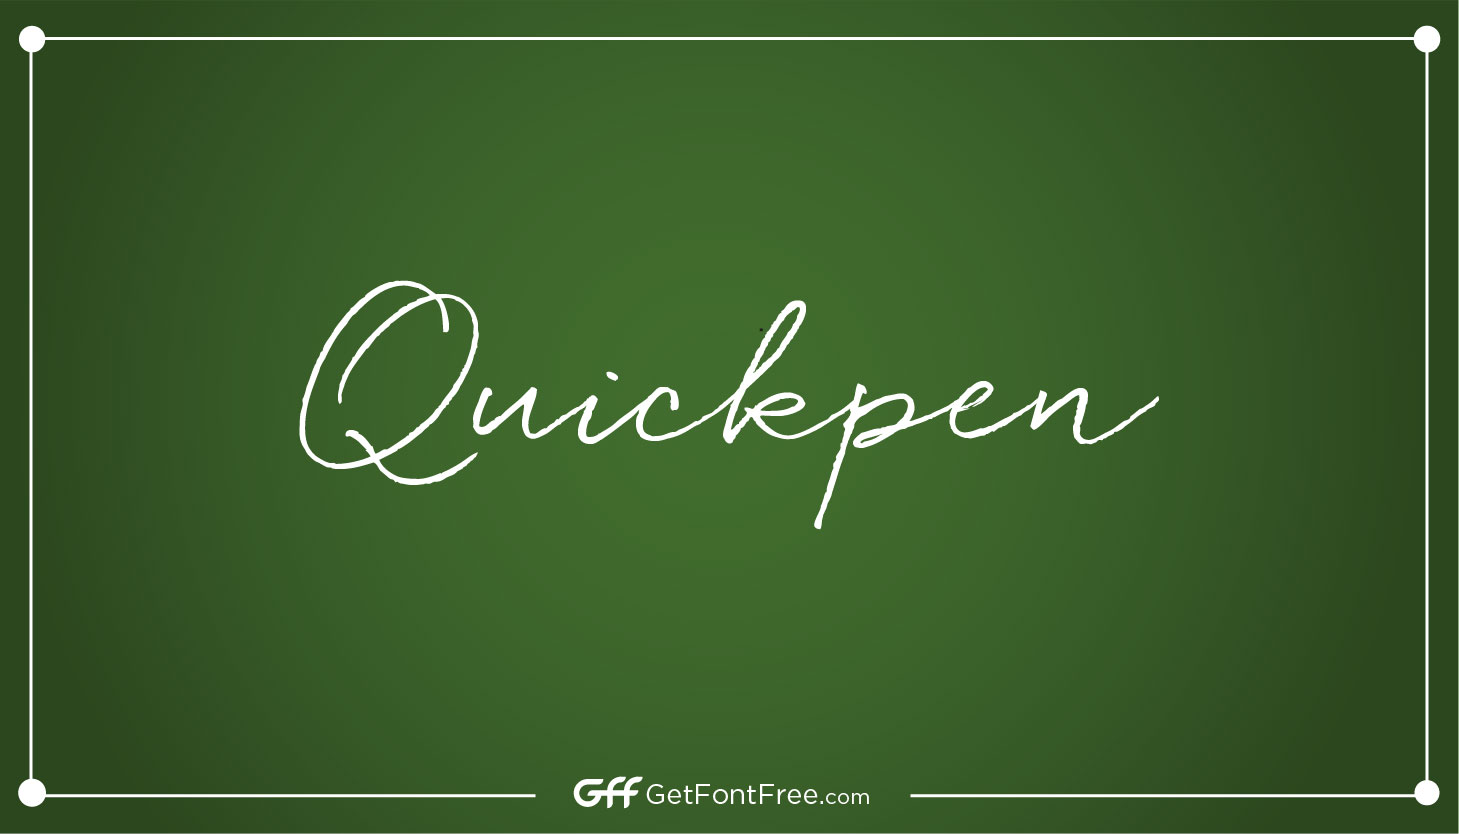 Quickpen Font